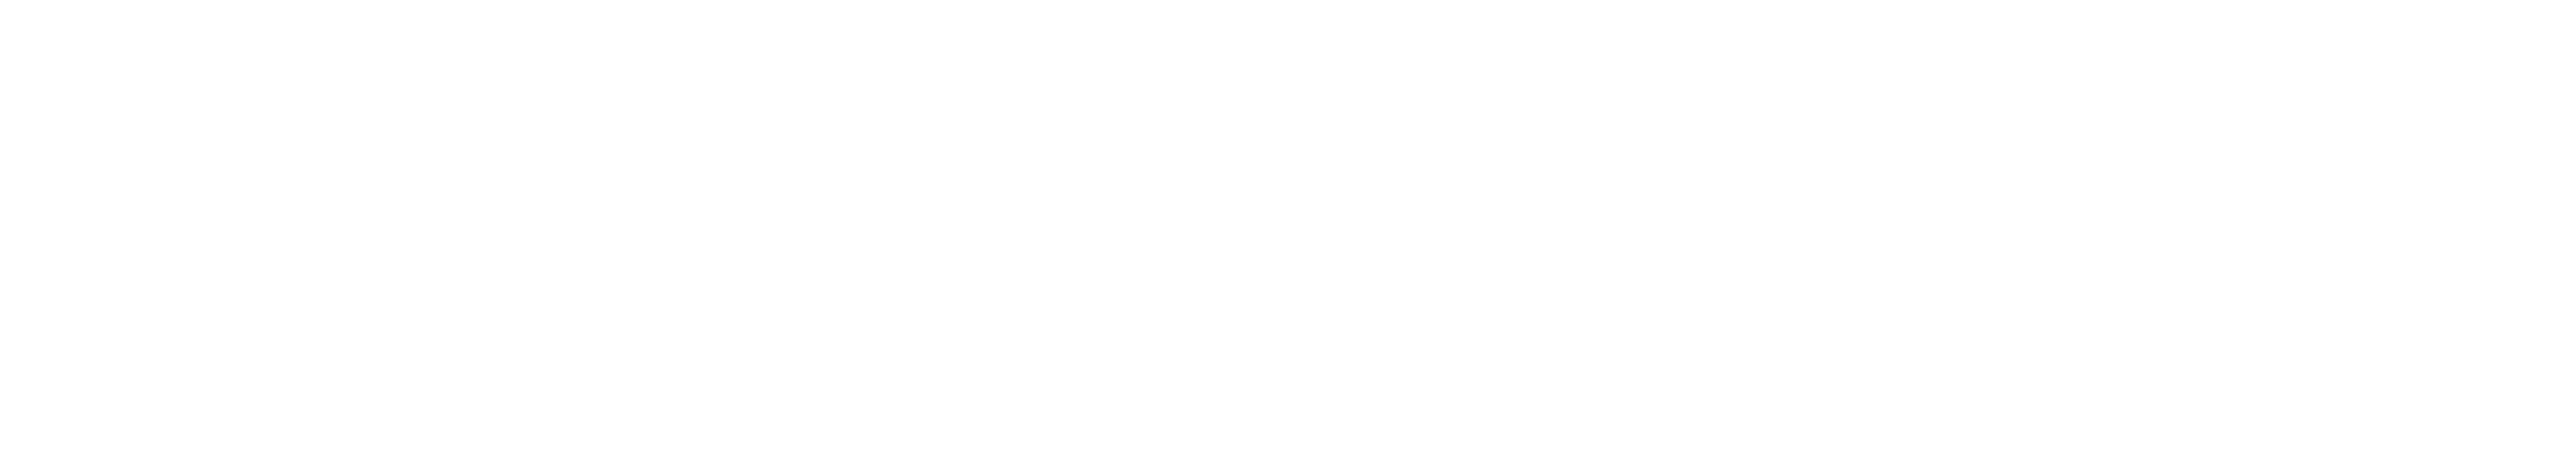 Infinity Swap